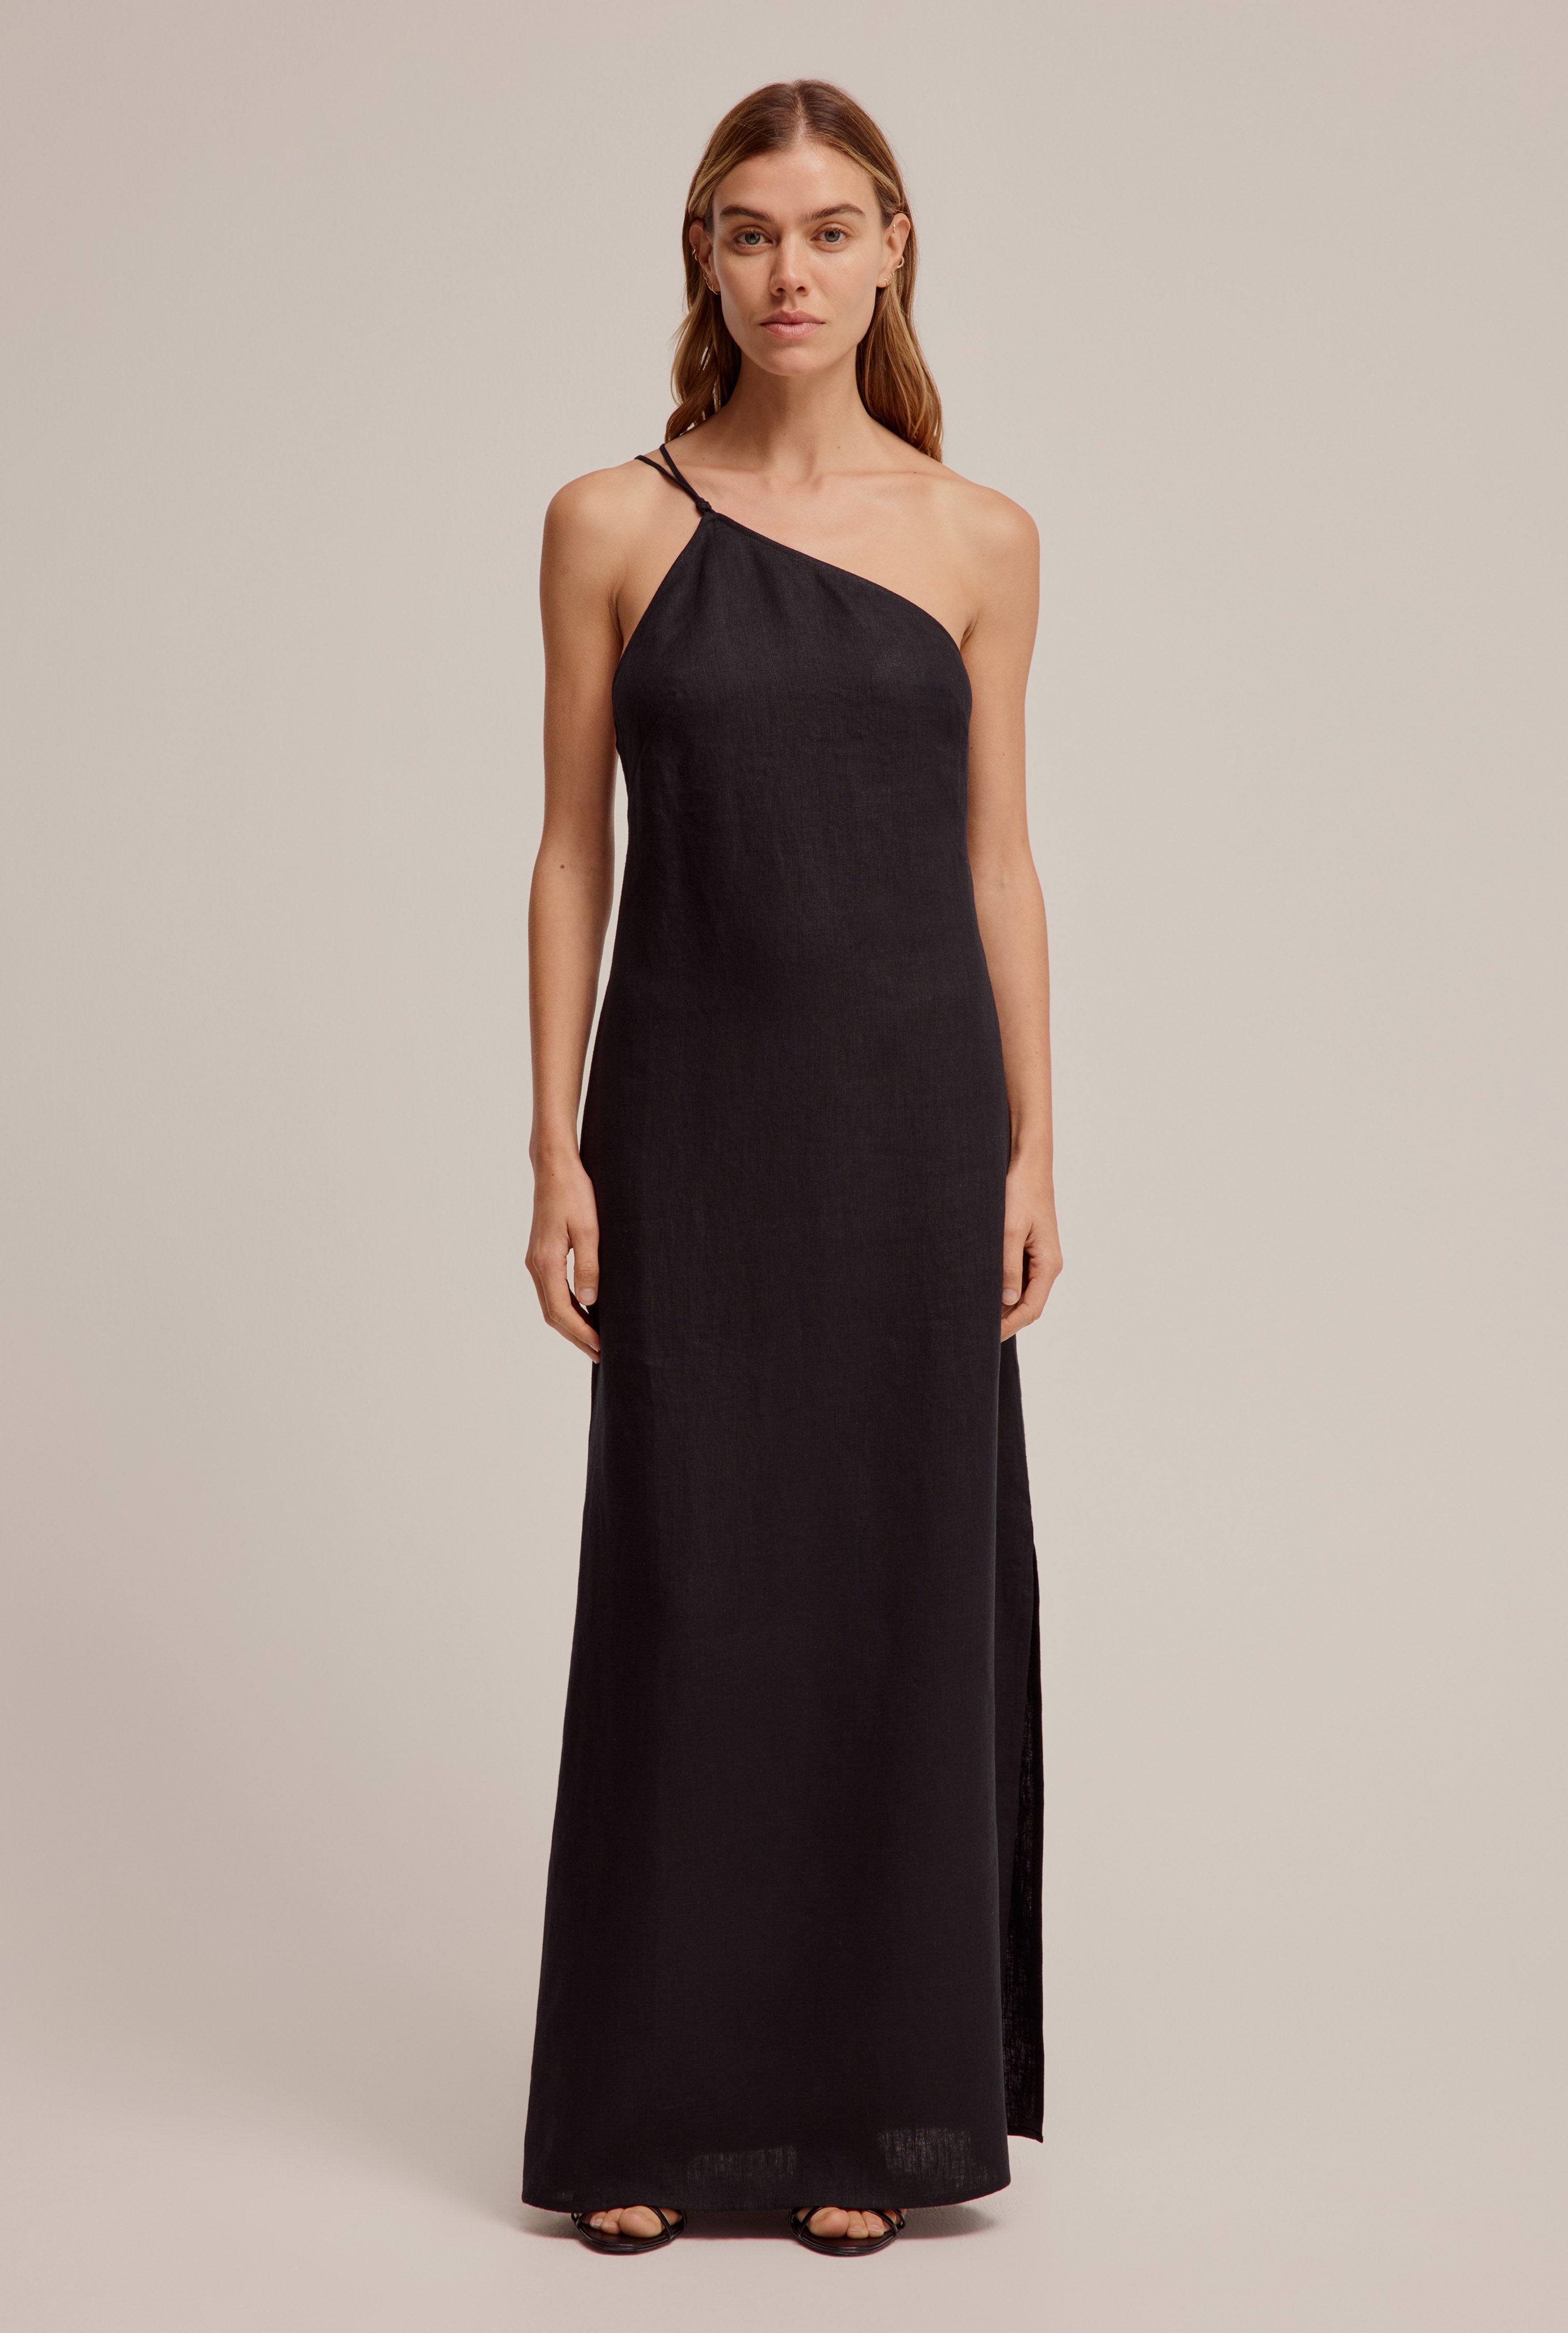 Venroy - Womens One Shoulder Linen Dress in Black | Venroy | Premium Leisurewear designed in Australia